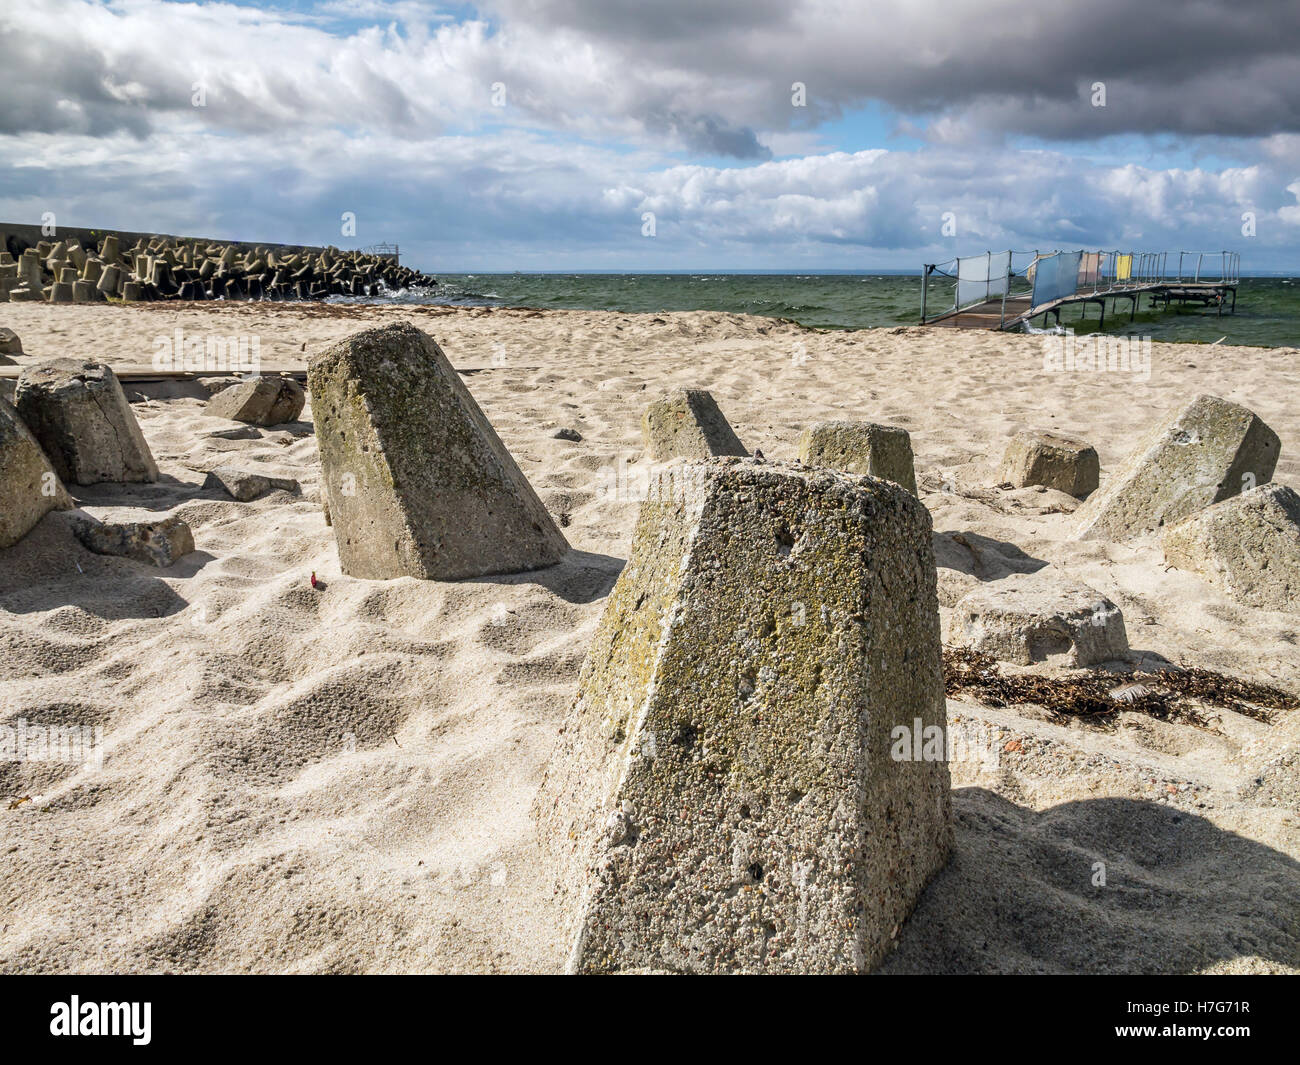 Massive concrete breakers on the beach Stock Photo